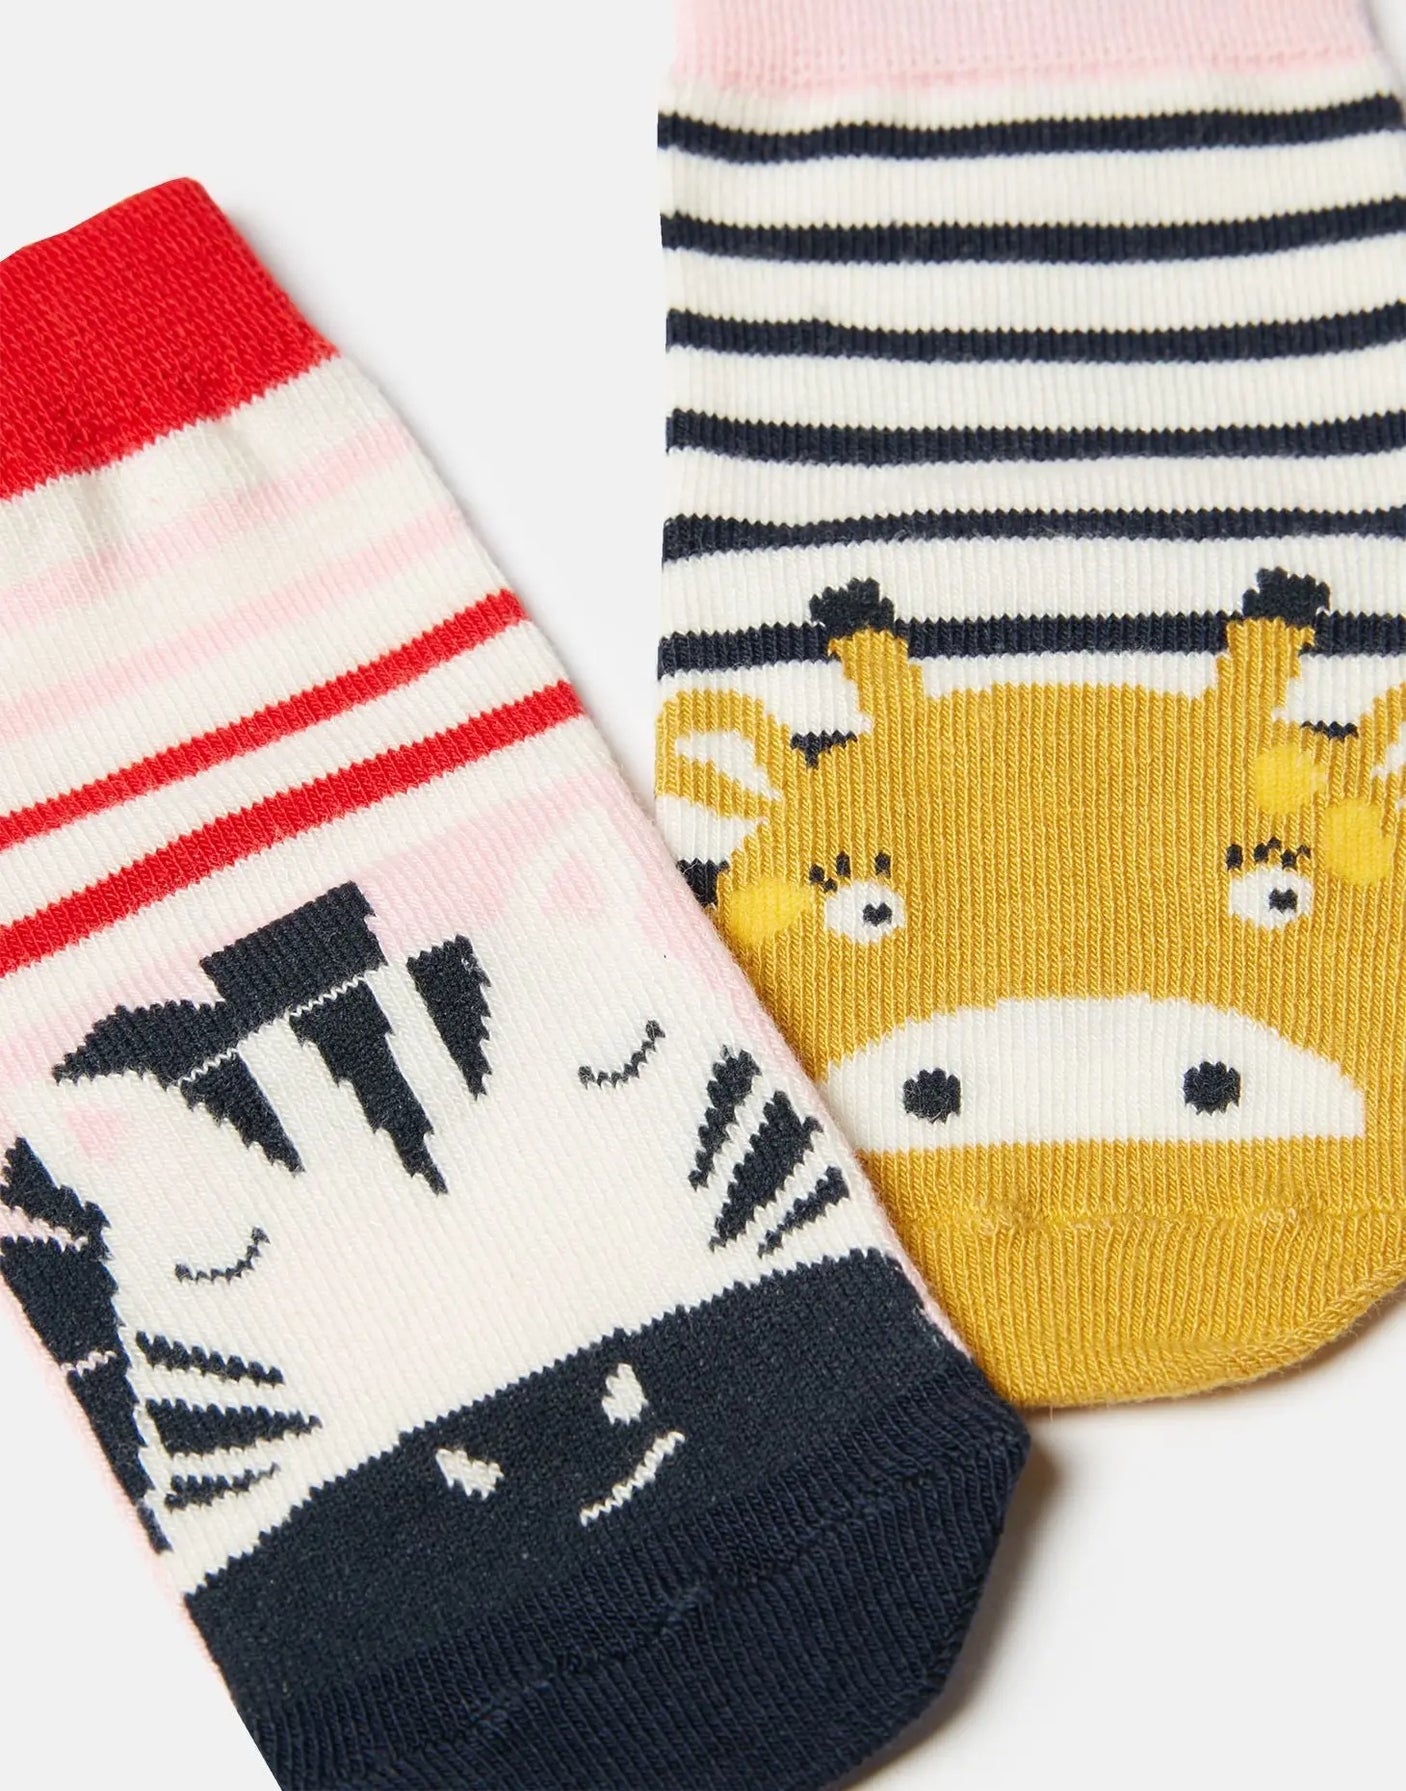 Neat Feet 2 Pack Of Socks Zebra Giraffe | Joules - Joules